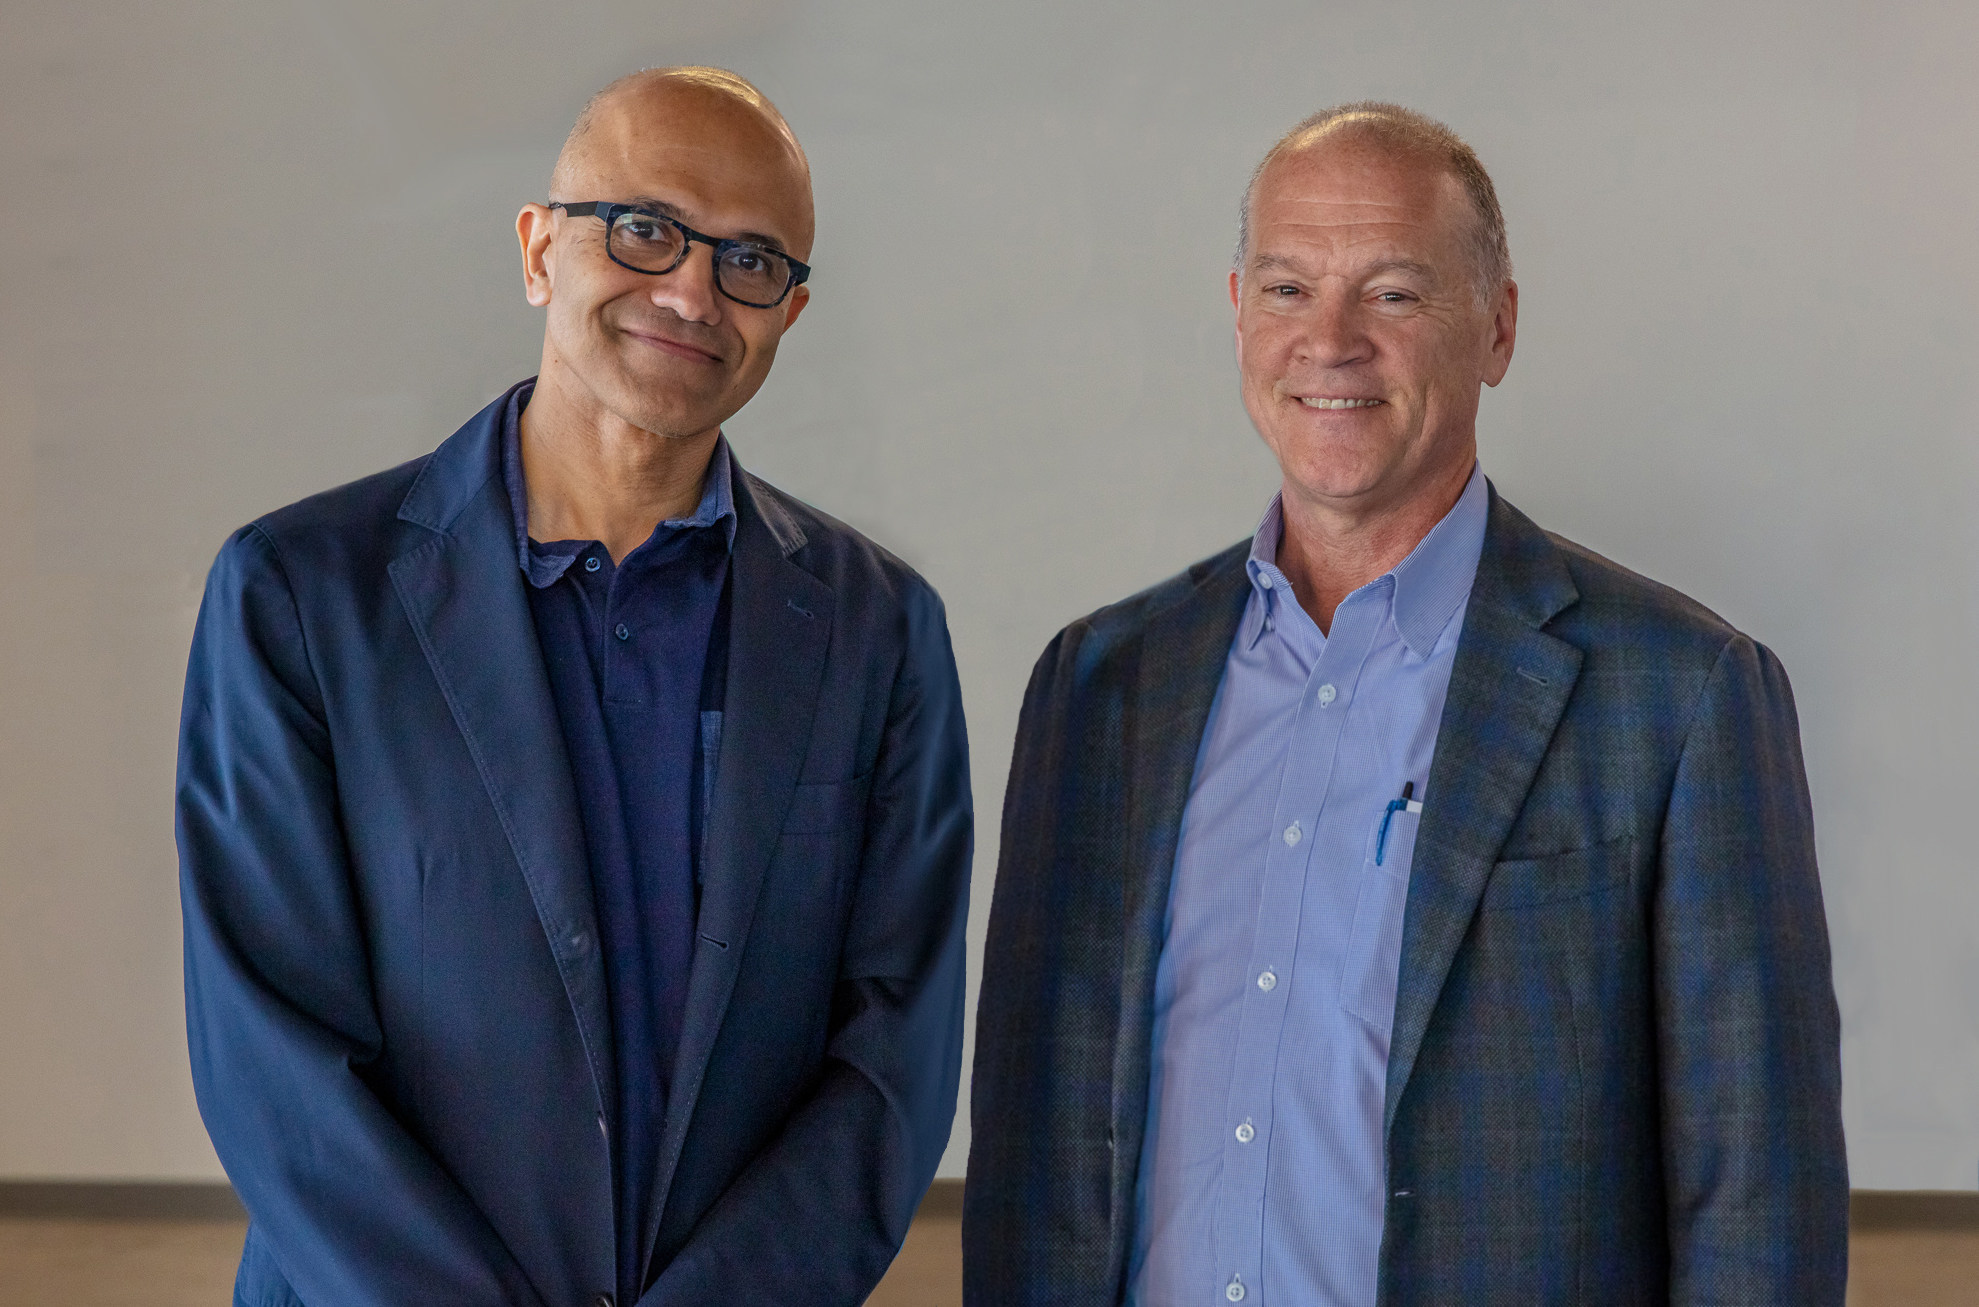 Microsoft CEO Satya Nadella with AT&T Communications CEO John Donovan